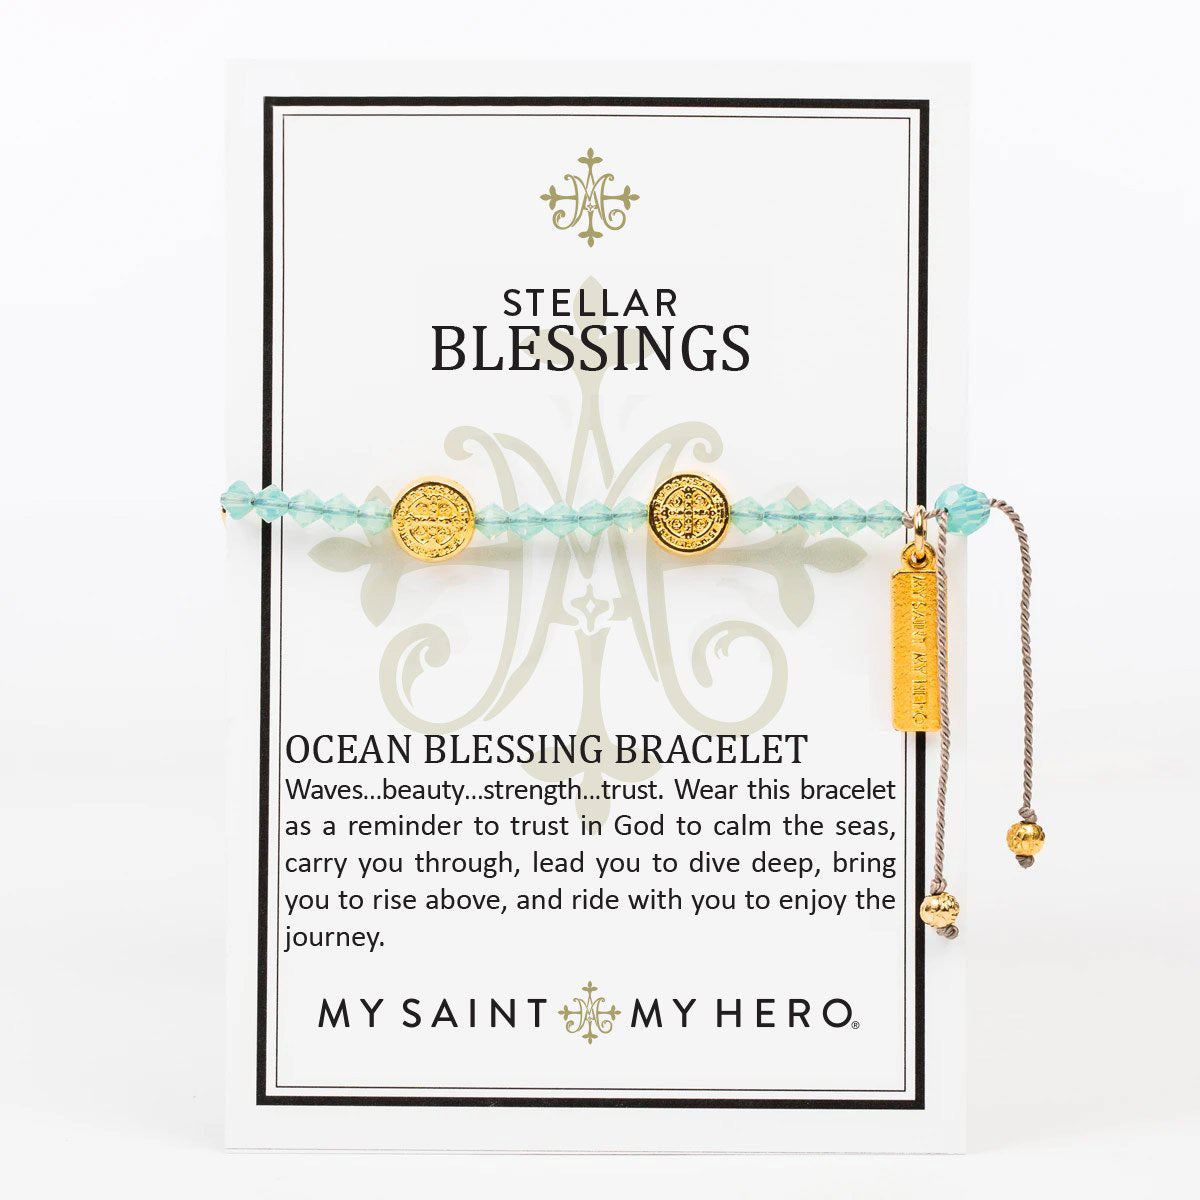 Stellar Blessings Ocean Bracelet by My Saint My Hero